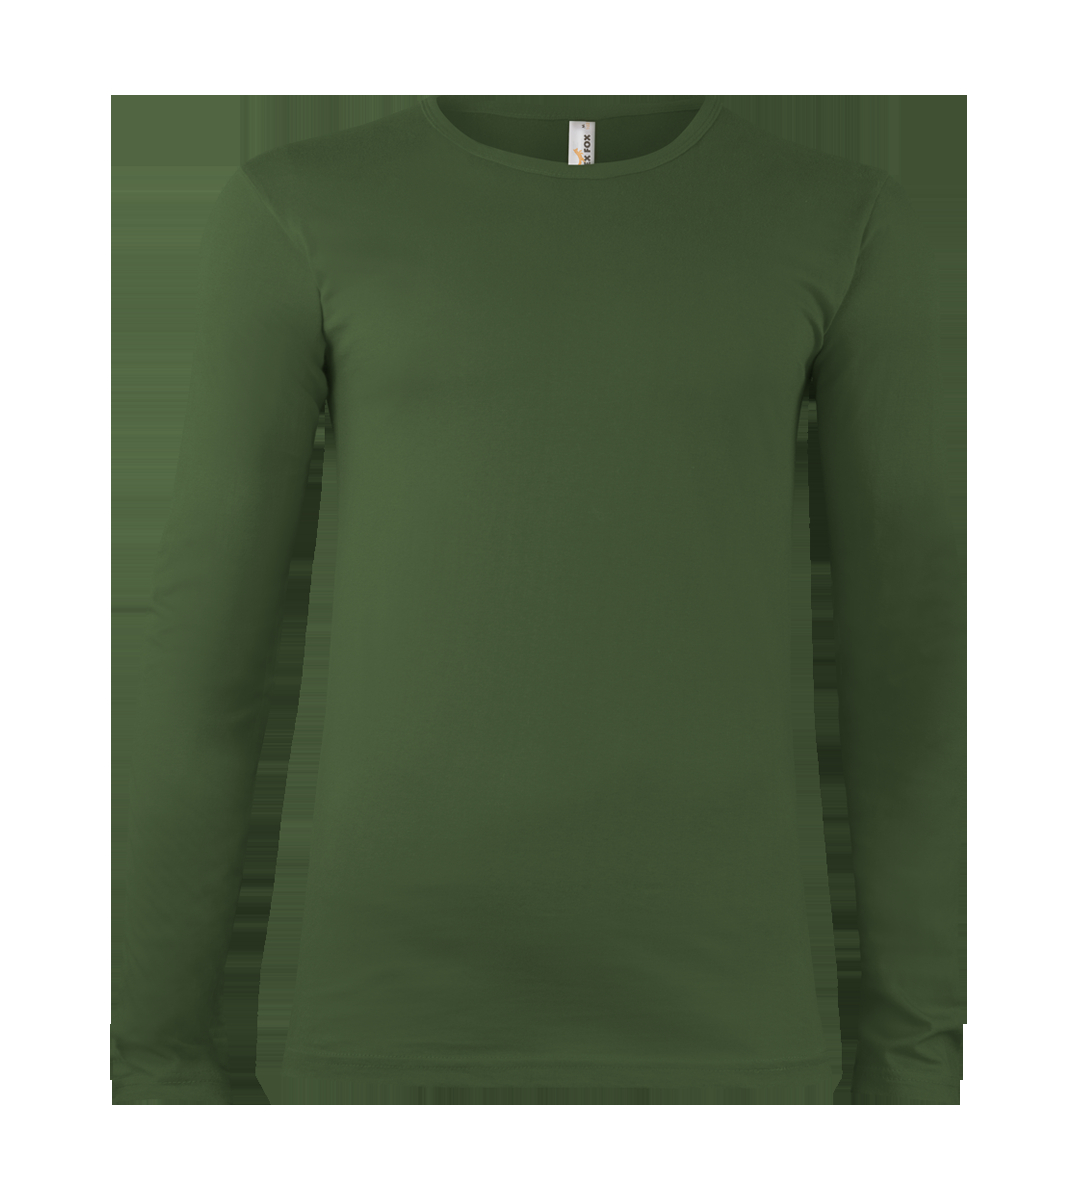 Nátelník - tričko s dlhým rukávom - OLIVA, S